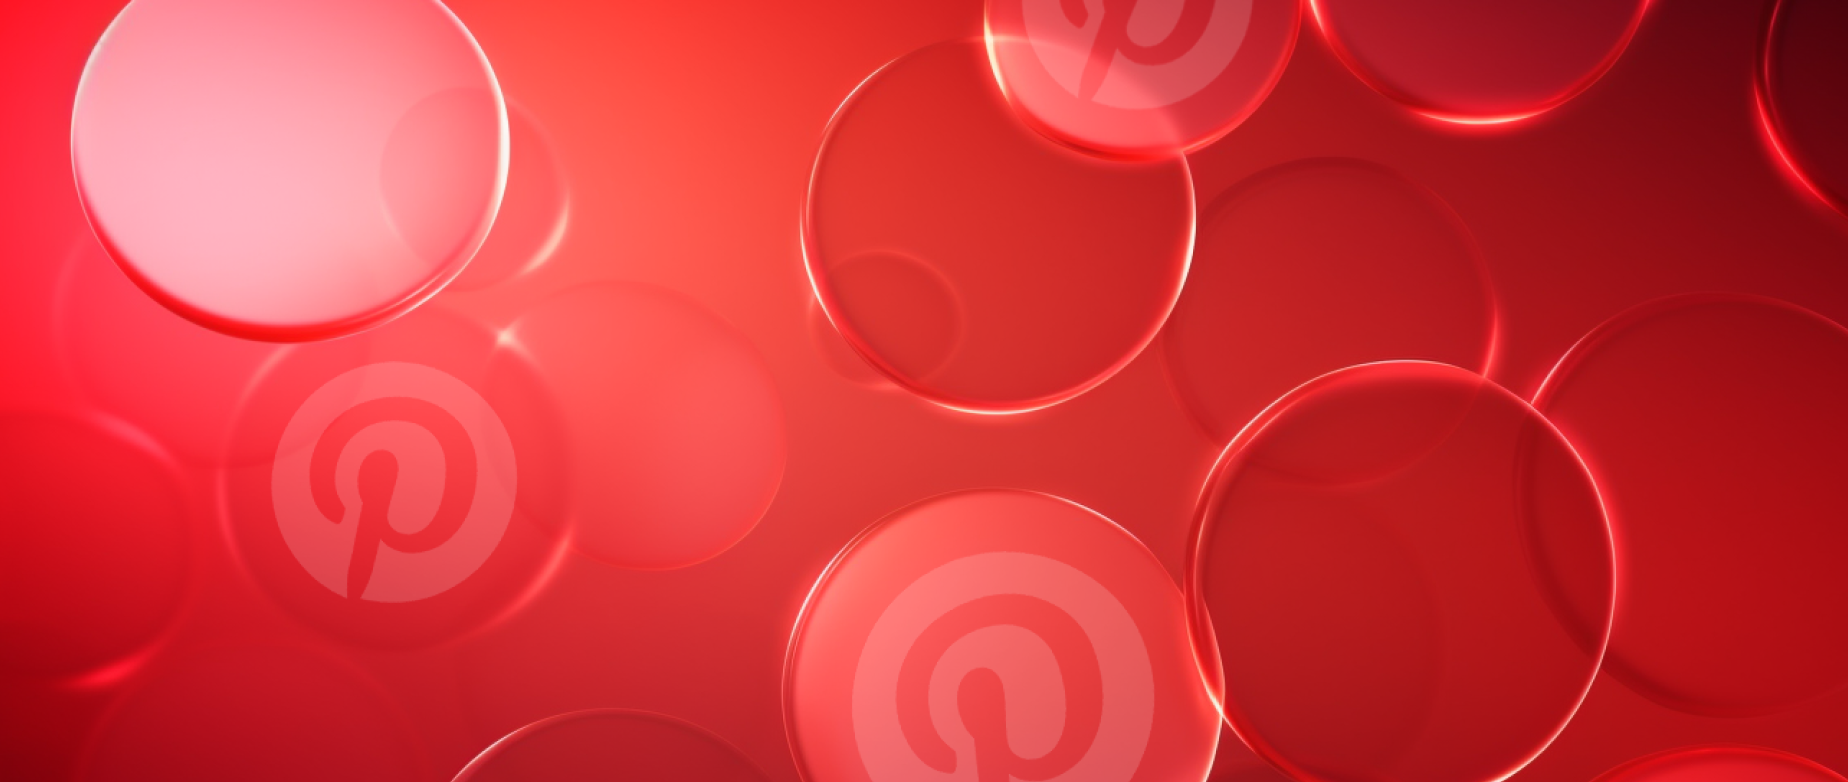 cercles rouges sur fond rouge avec le logo Pinterest : affiliation marketing